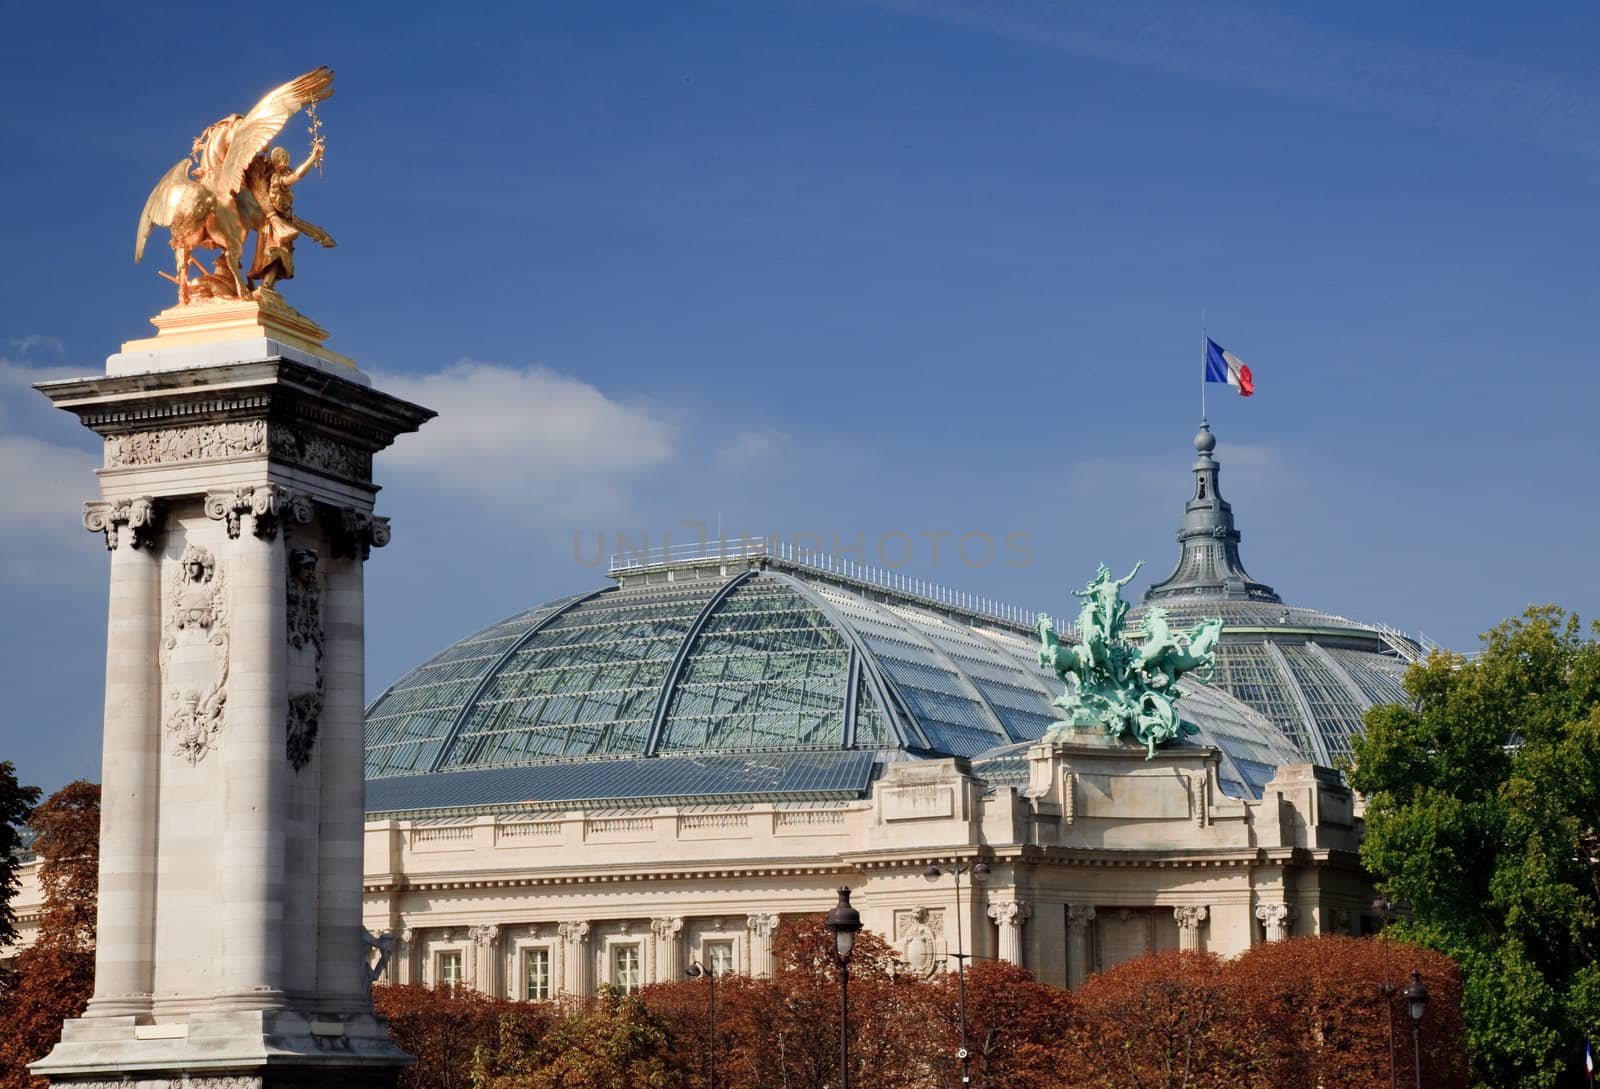 Grand Palais in Paris by steheap